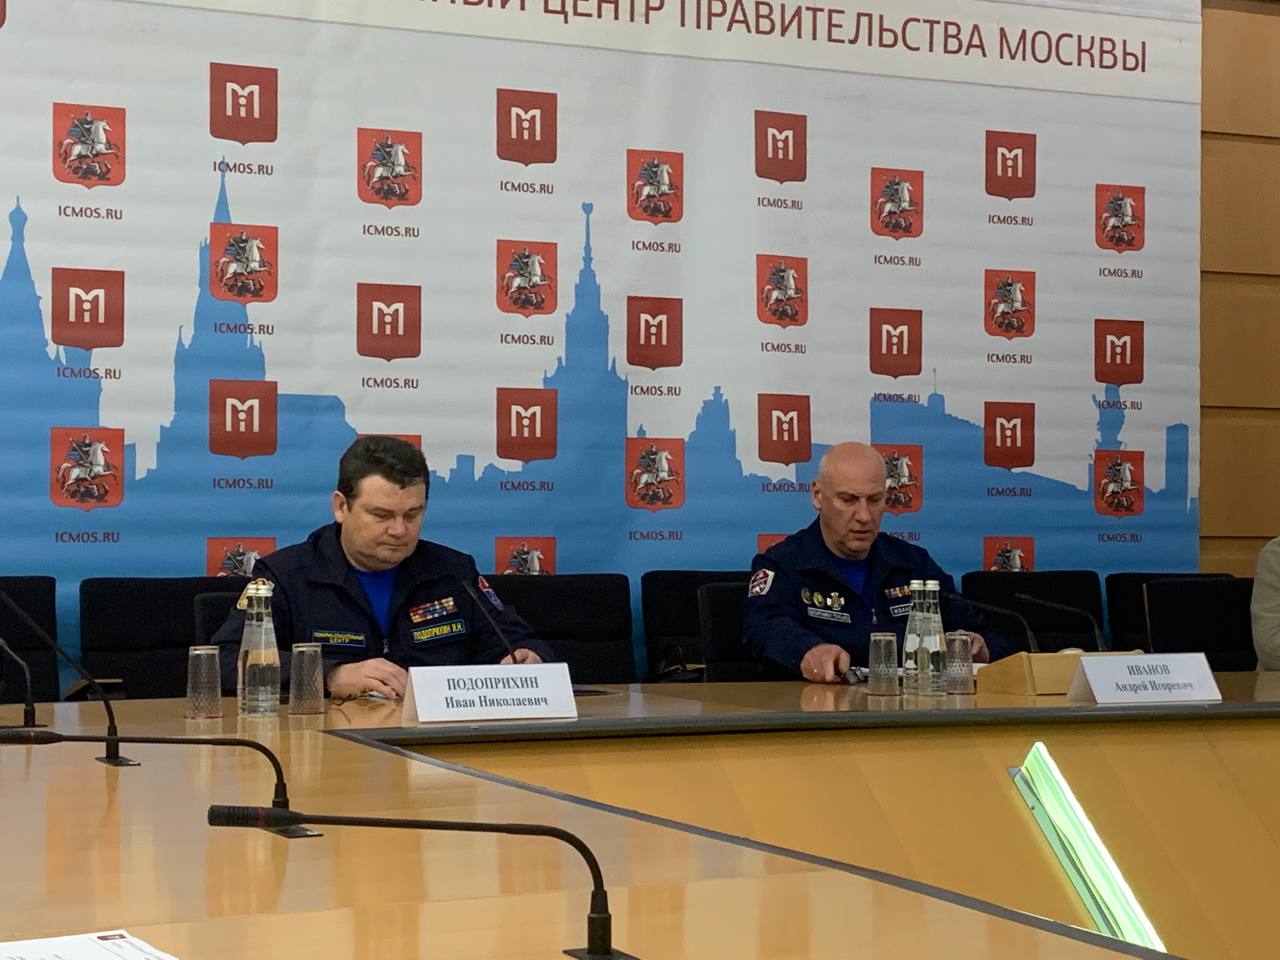 Спасатели рассказали о достижениях пожарной охраны в Москве